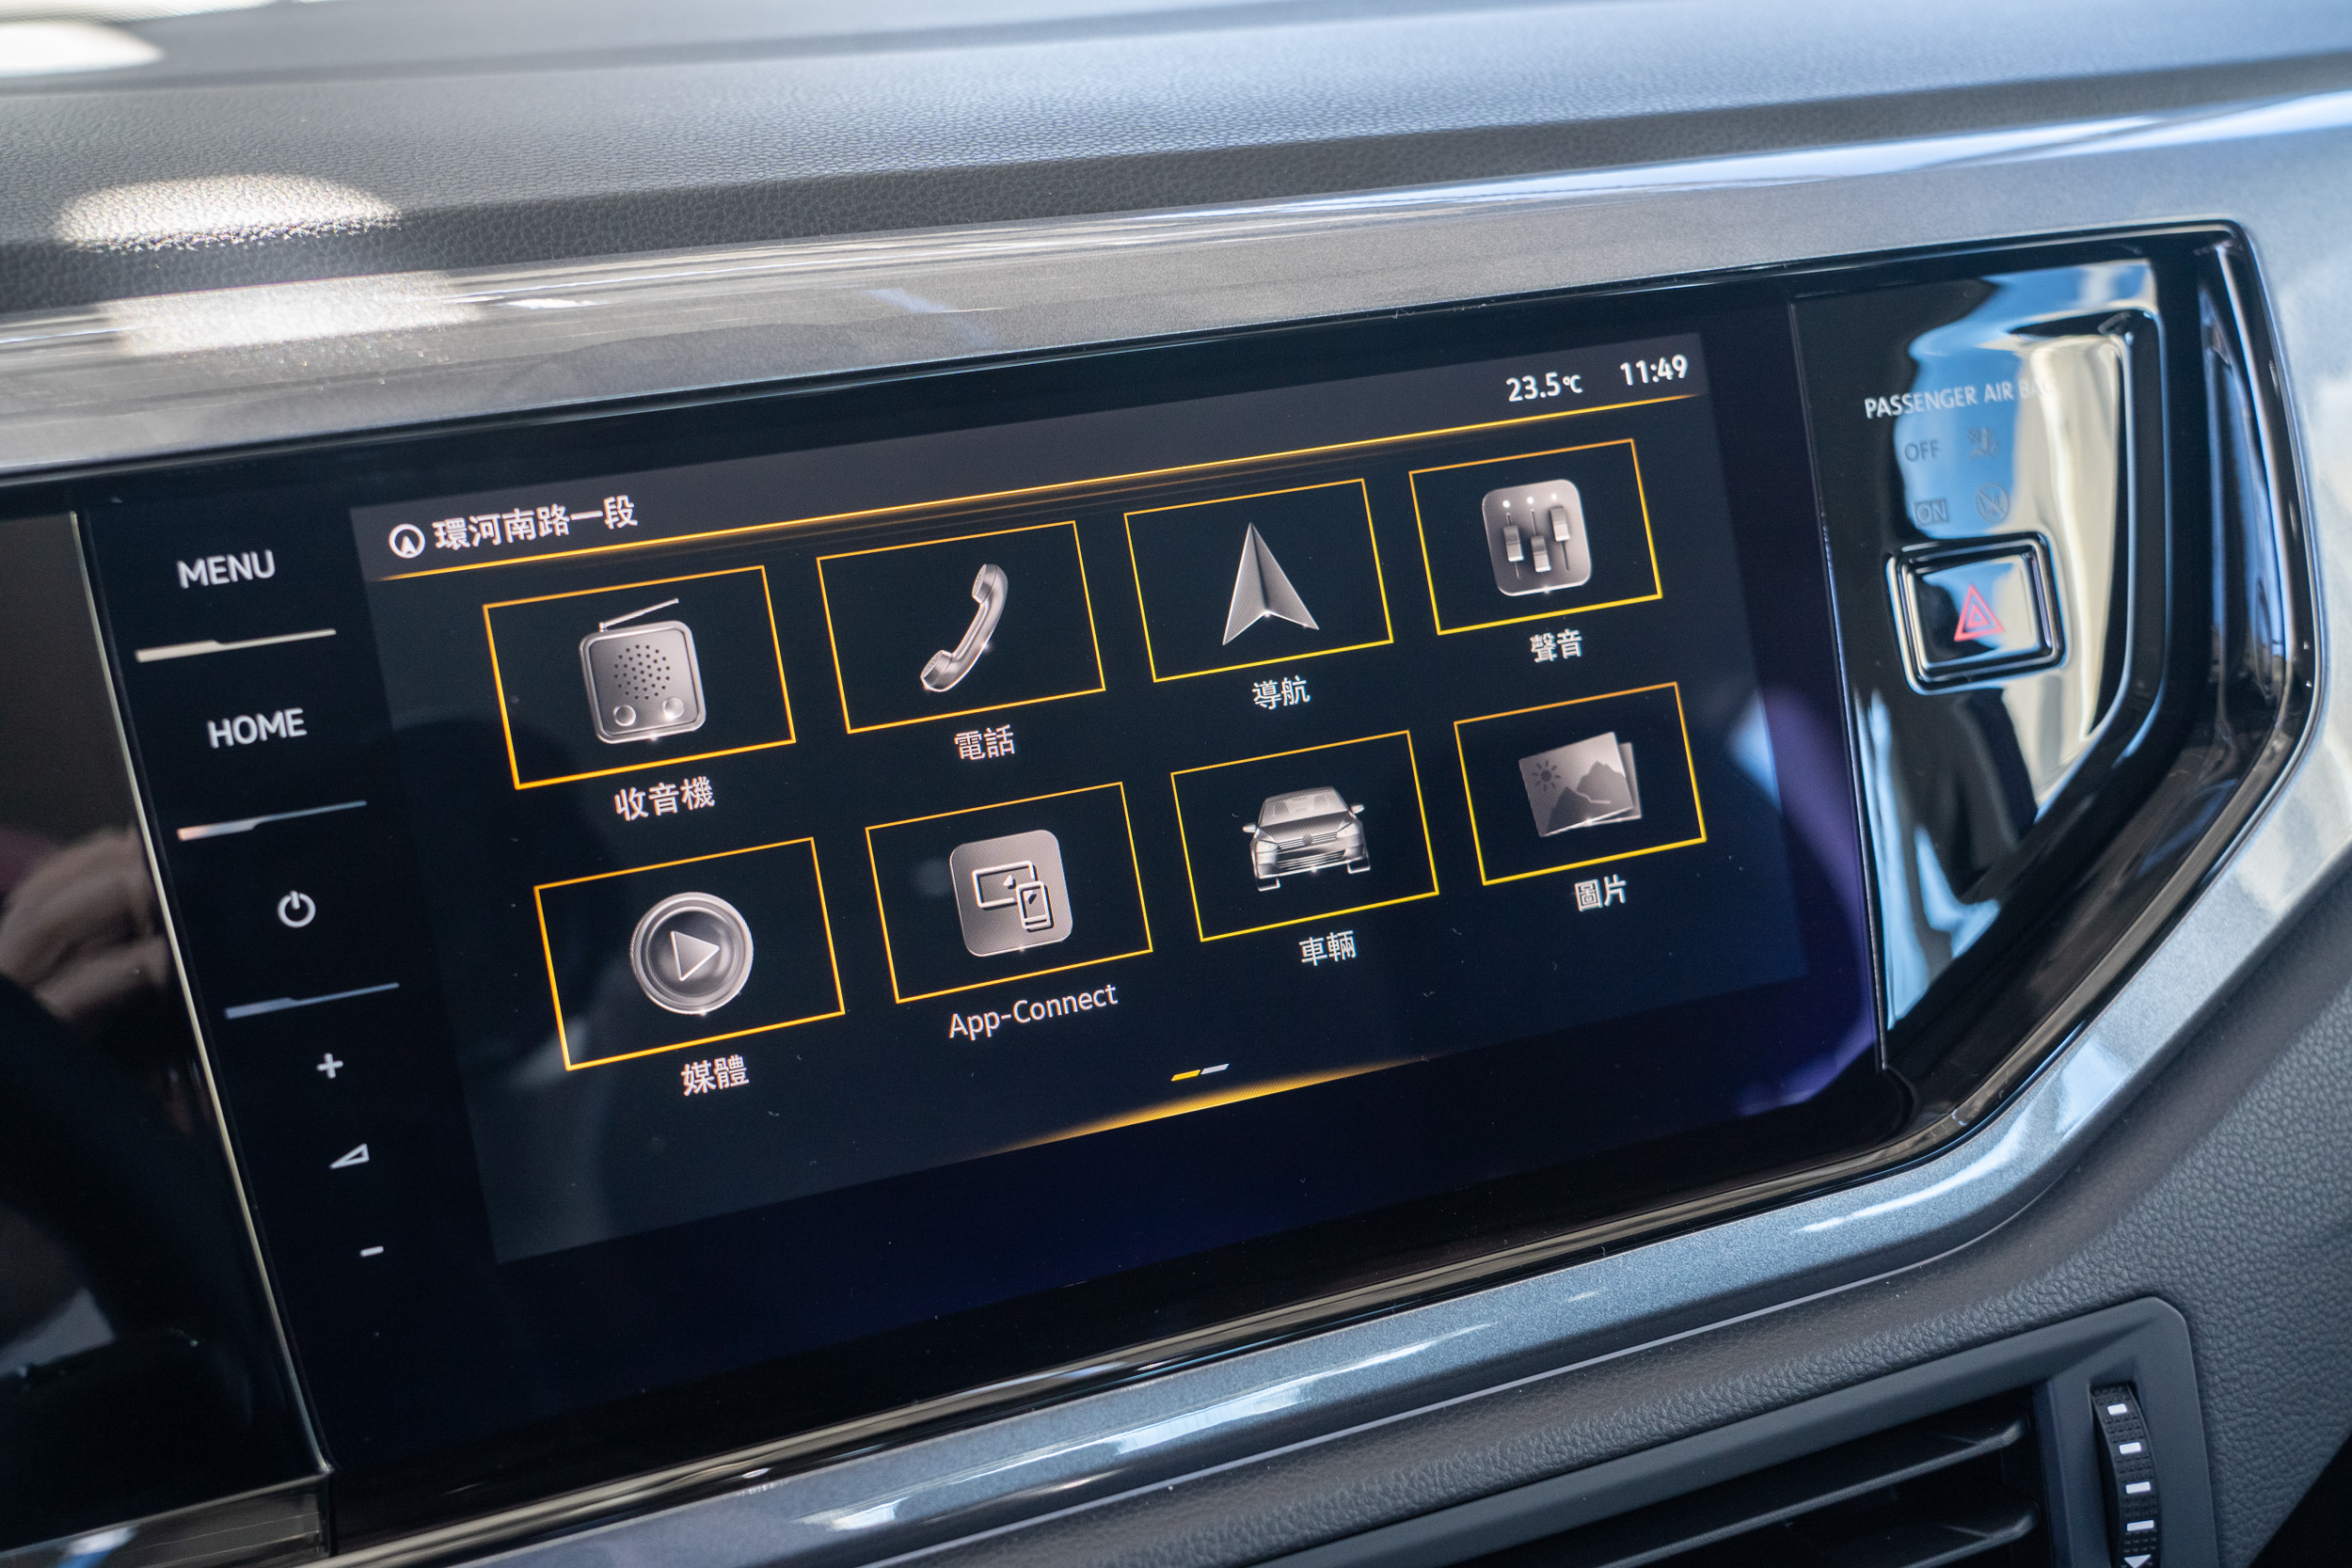 Polo 全車系標配 Discover Pro 9.2 吋多媒體鏡面觸控主機 ( MIB 3 )。